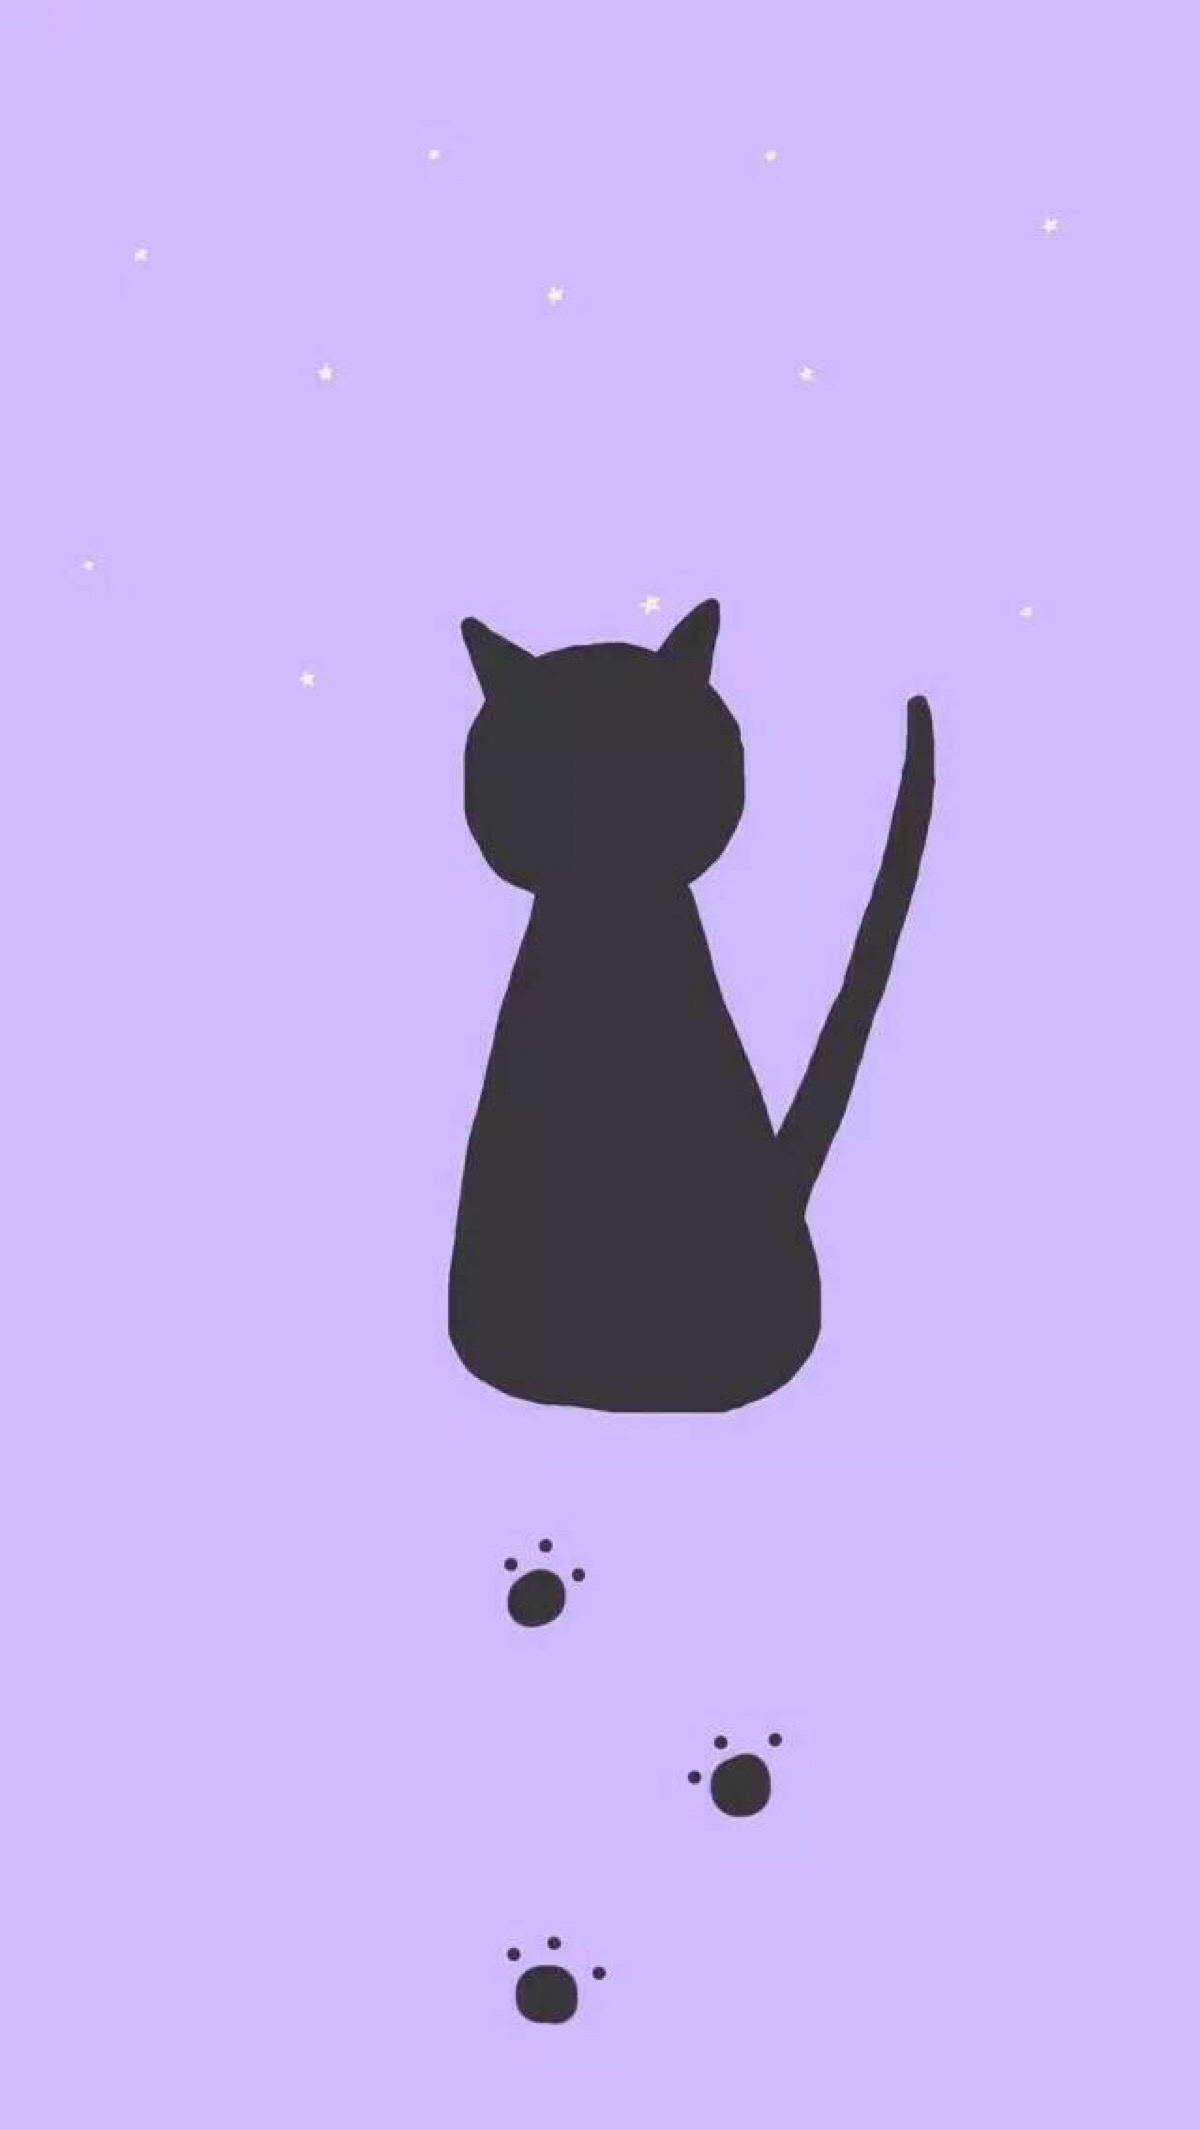 紫色系壁纸希望大家喜欢 壁纸紫色猫iphone Wallpaper 堆糖 美图壁纸兴趣社区